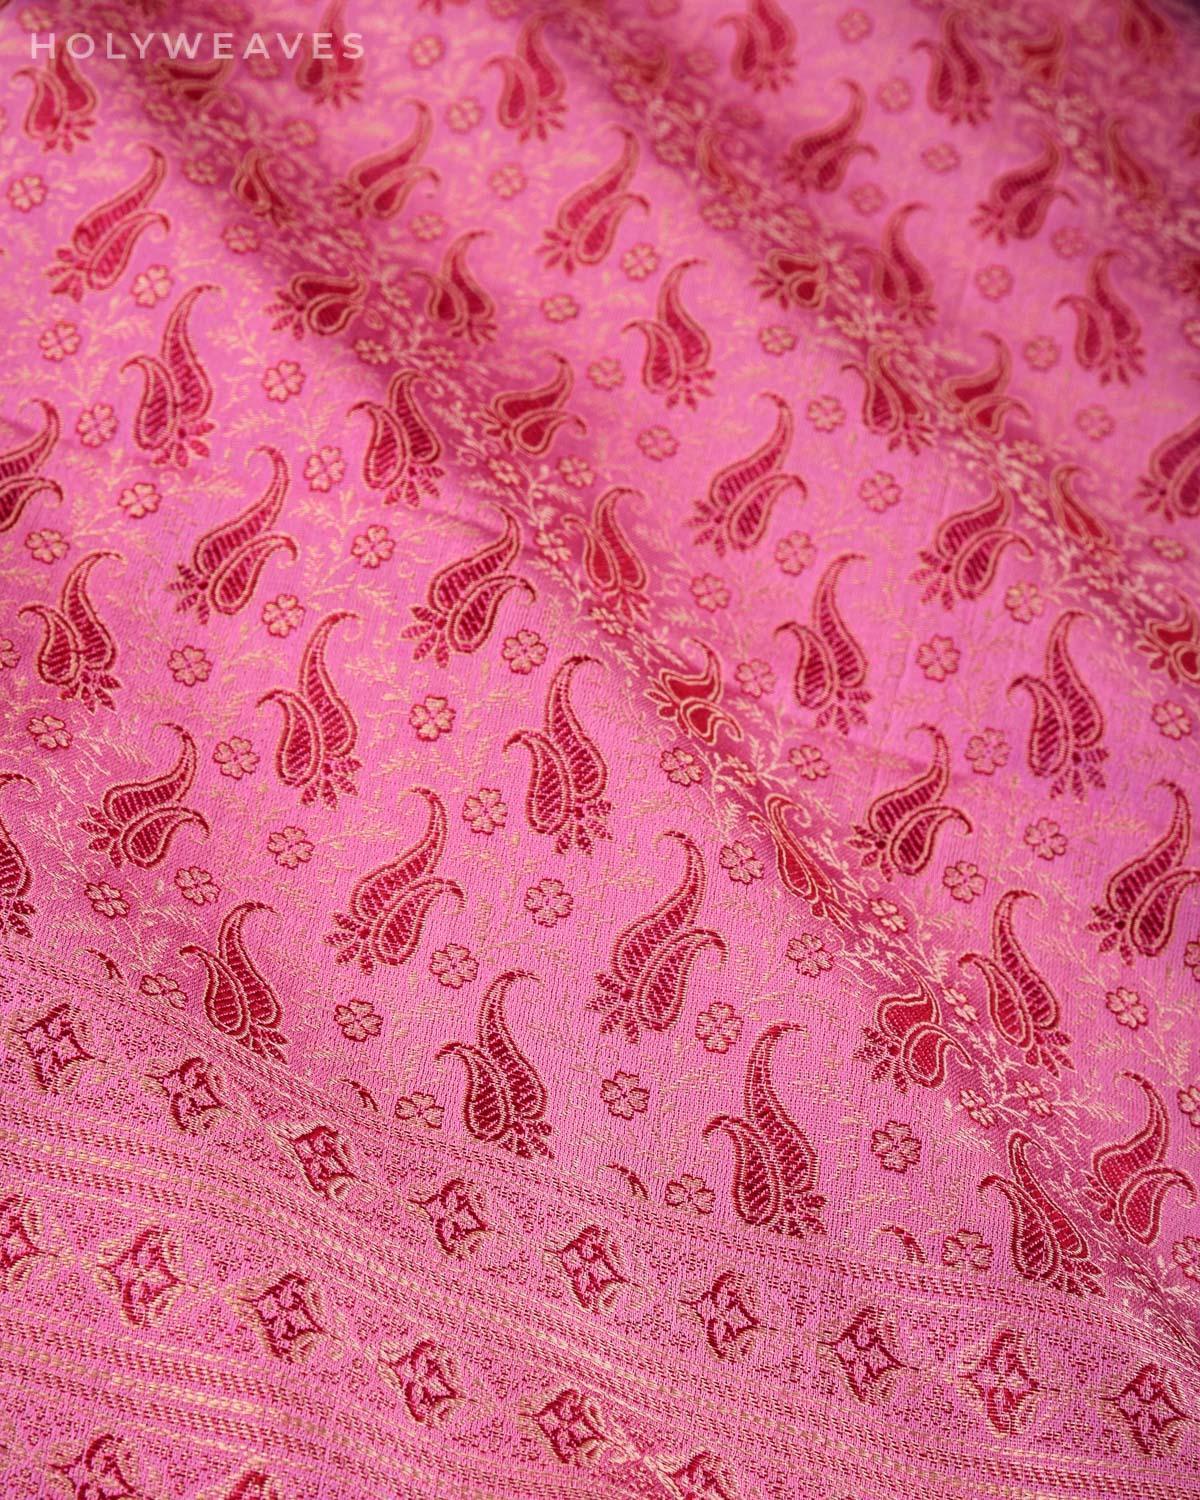 Mauve Banarasi Jamawar Handwoven Silk Scarf 72"x21" - By HolyWeaves, Benares